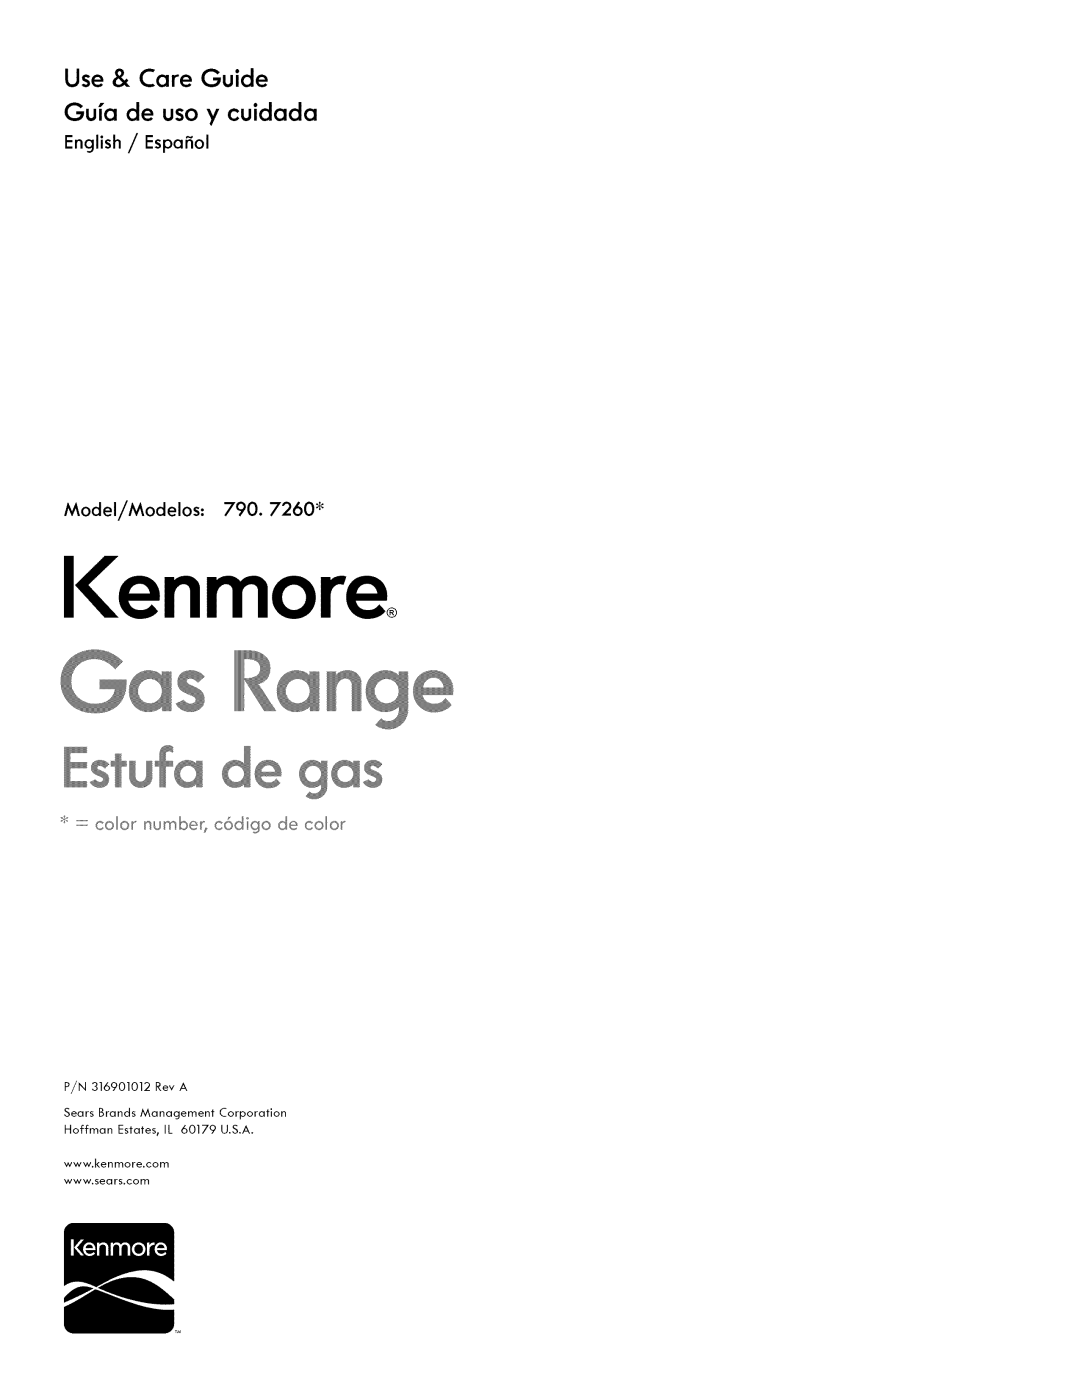 Kenmore manual English / Espafiol Model/Modelos: 790. 7260 _, Ienmoreo, Use & Care Guide Gufa de uso y cuidada 